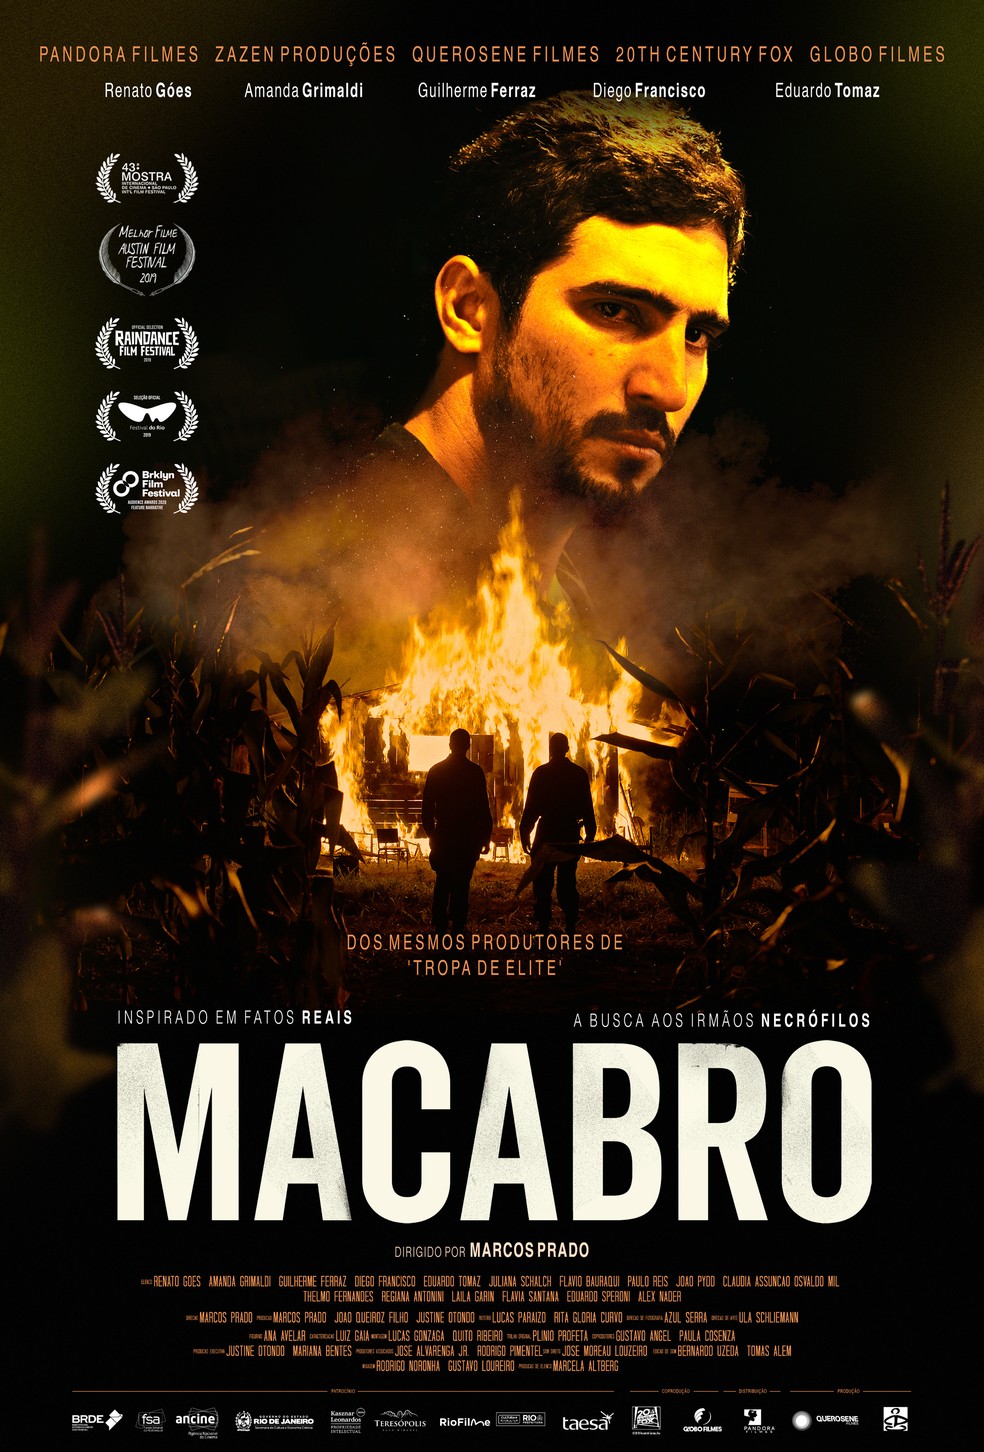 Macabro&#39;, filme de suspense com Renato Góes, estreia dia 28 em drive-in;  veja novo trailer | Cinema | G1